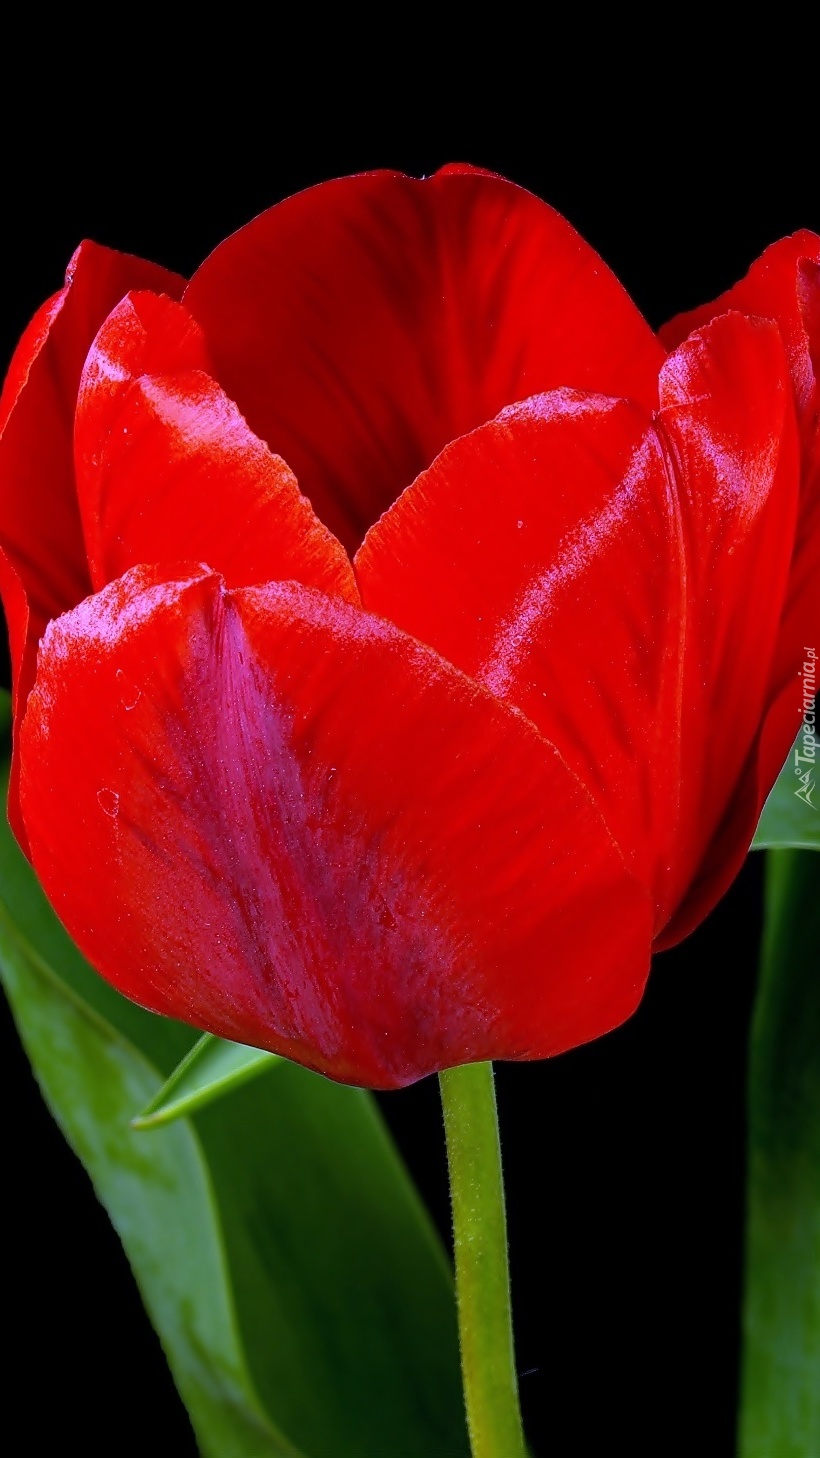 Tulipan czerwony